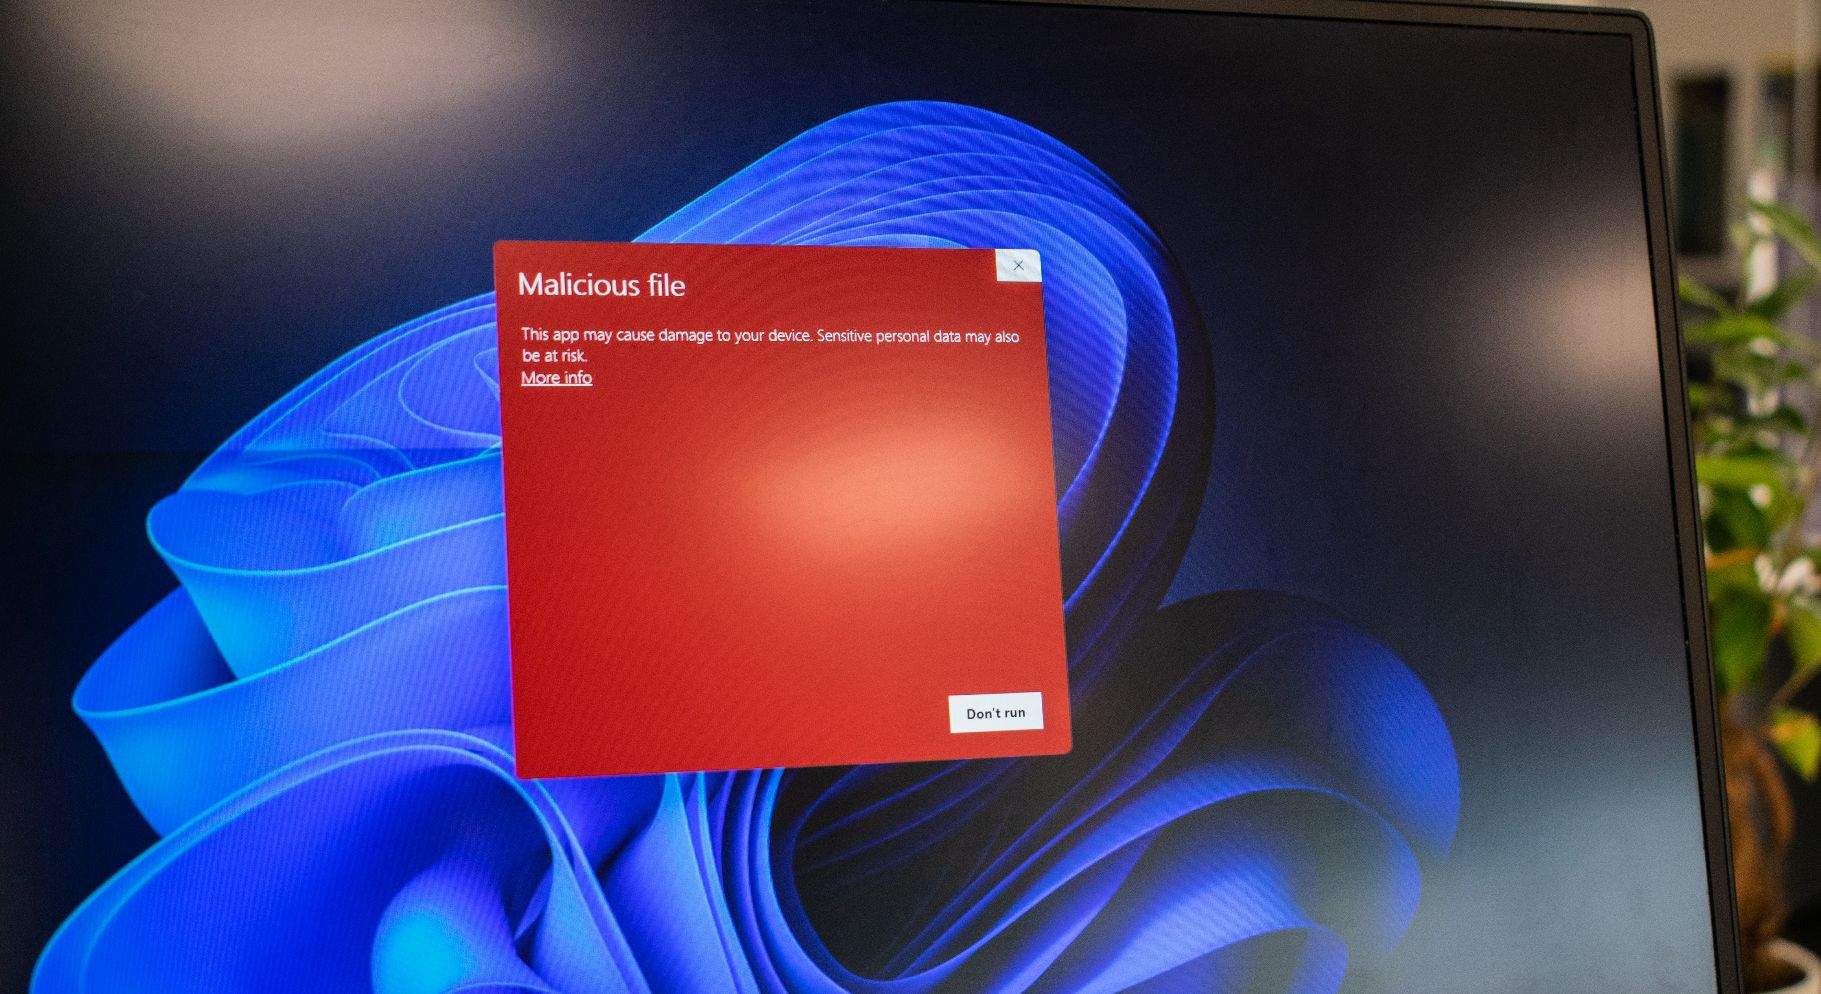 thông báo phần mềm độc hại trên màn hình máy tính xách tay